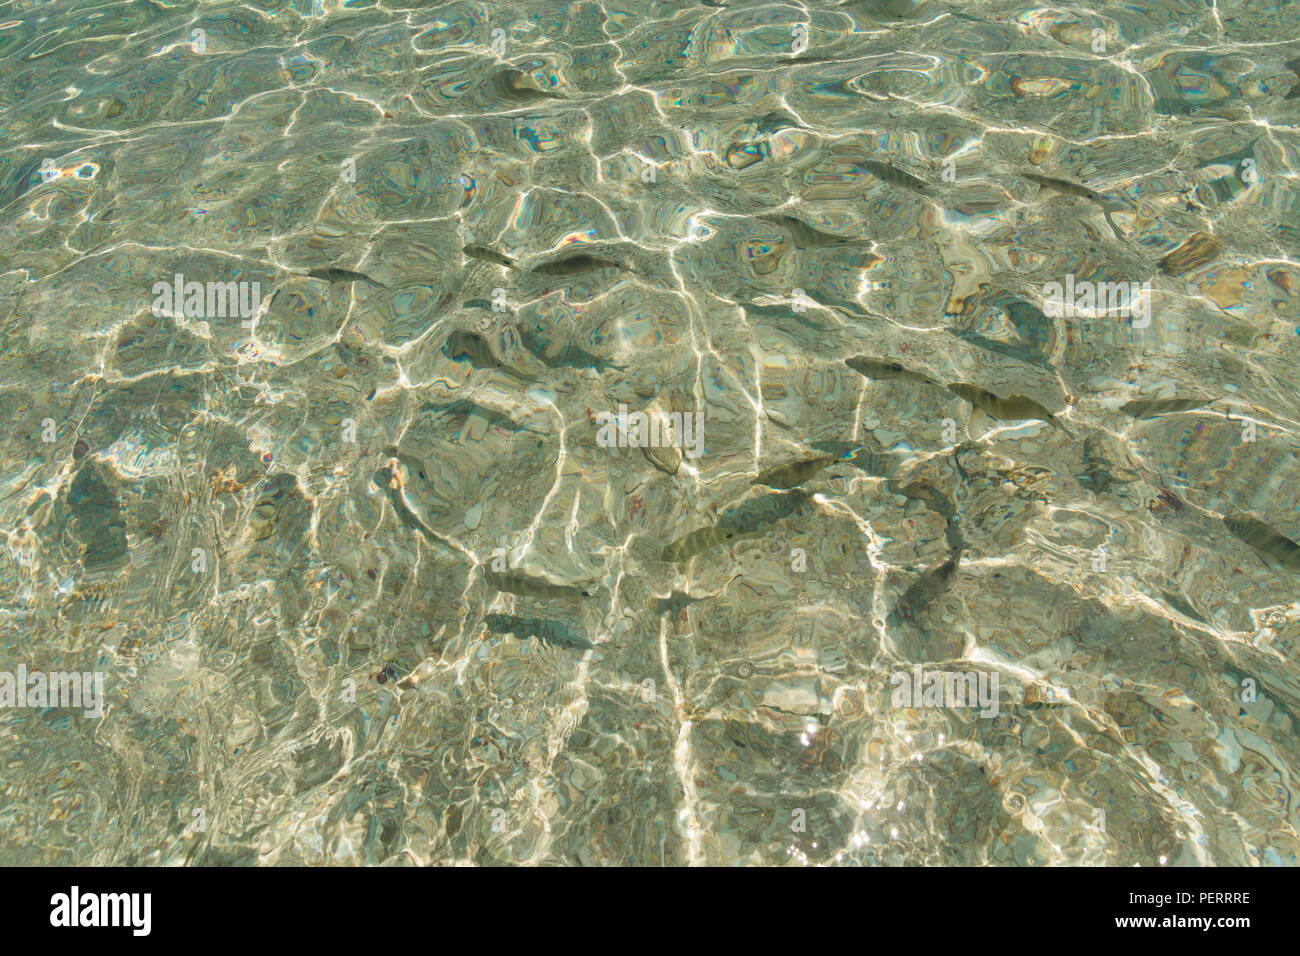 Photo de l'étonnante de l'eau claire comme du cristal, et les poissons nageant dans les eaux peu profondes de la partie brillante plage immaculée de l'île de RAWA, près de... Banque D'Images